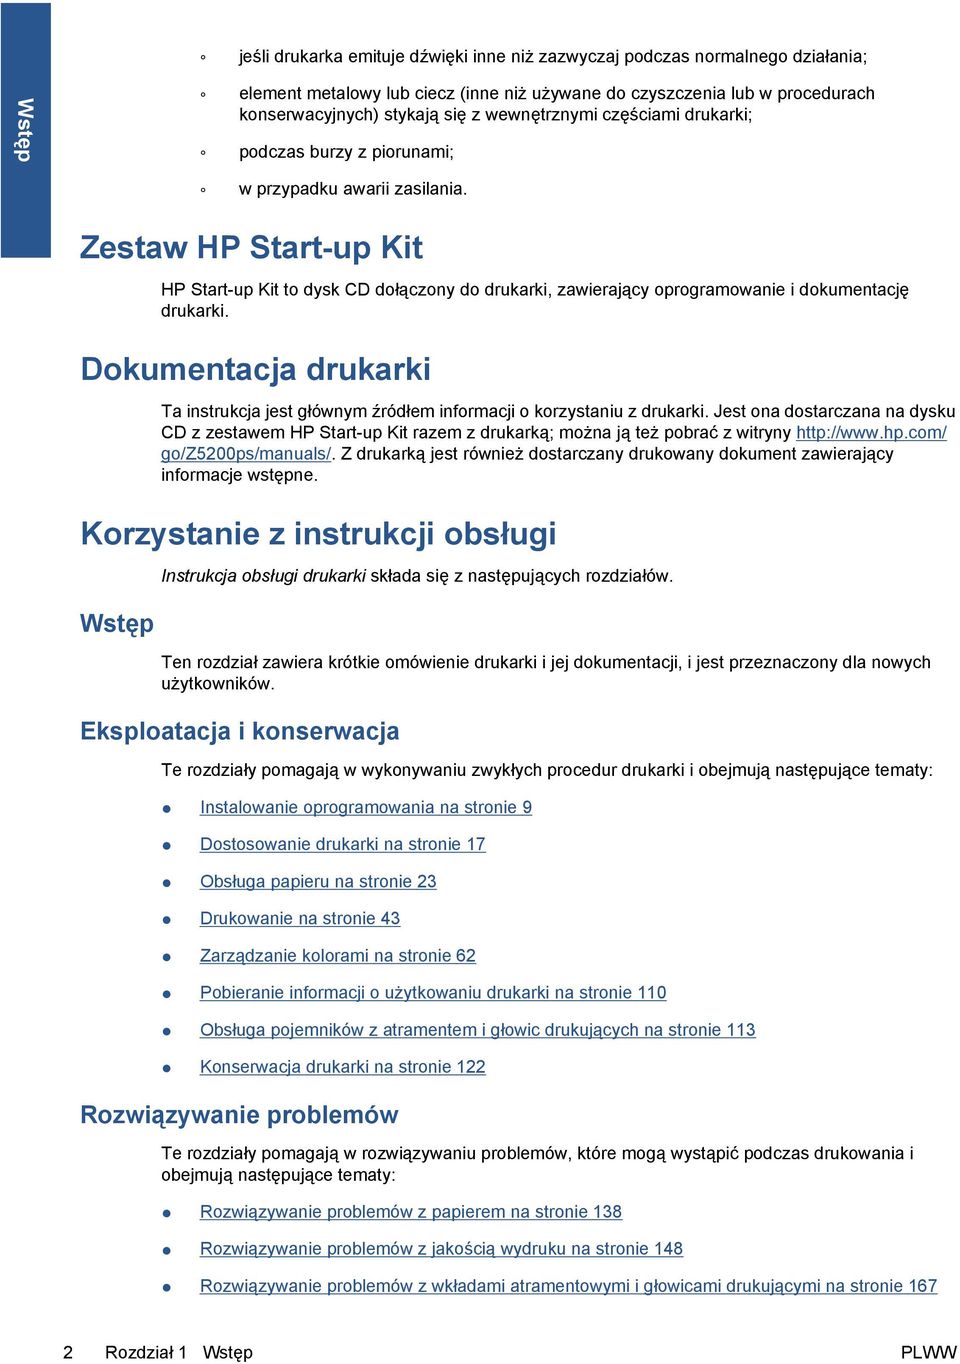 Zestaw HP Start-up Kit HP Start-up Kit to dysk CD dołączony do drukarki, zawierający oprogramowanie i dokumentację drukarki.